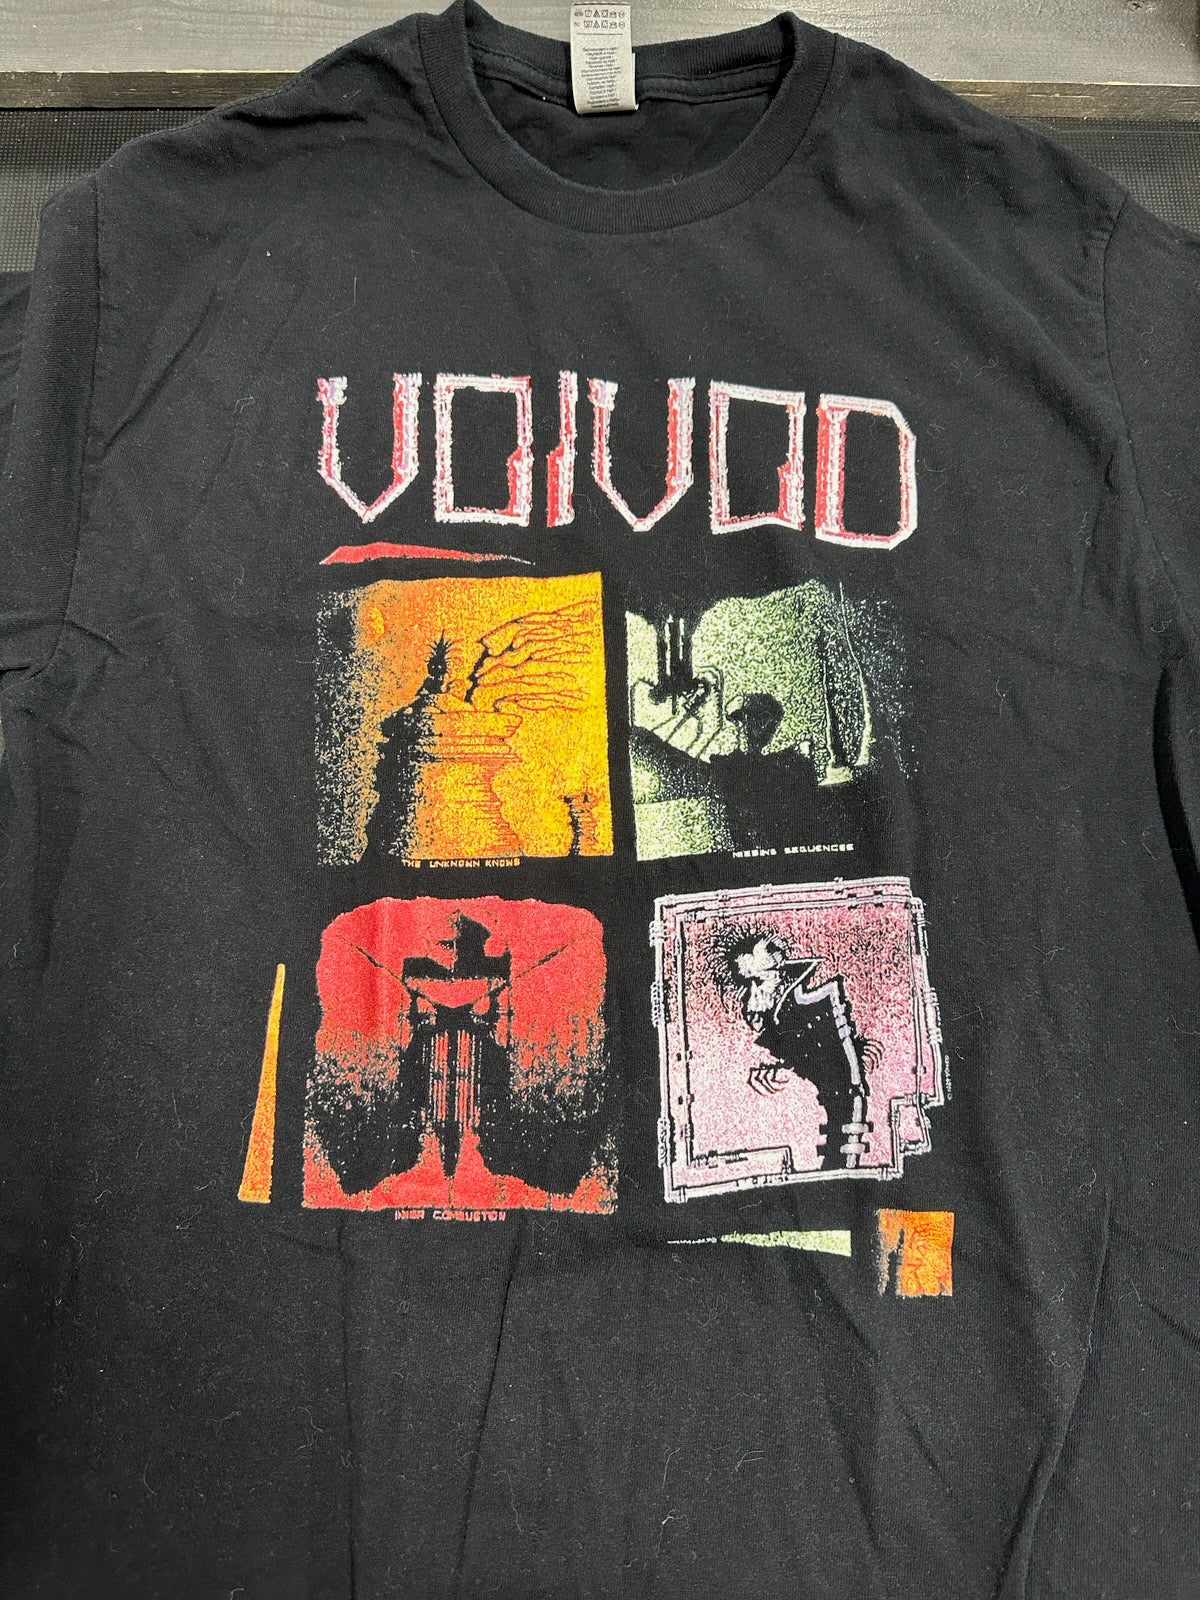 Voivod Graphic T-Shirt, Blk, M